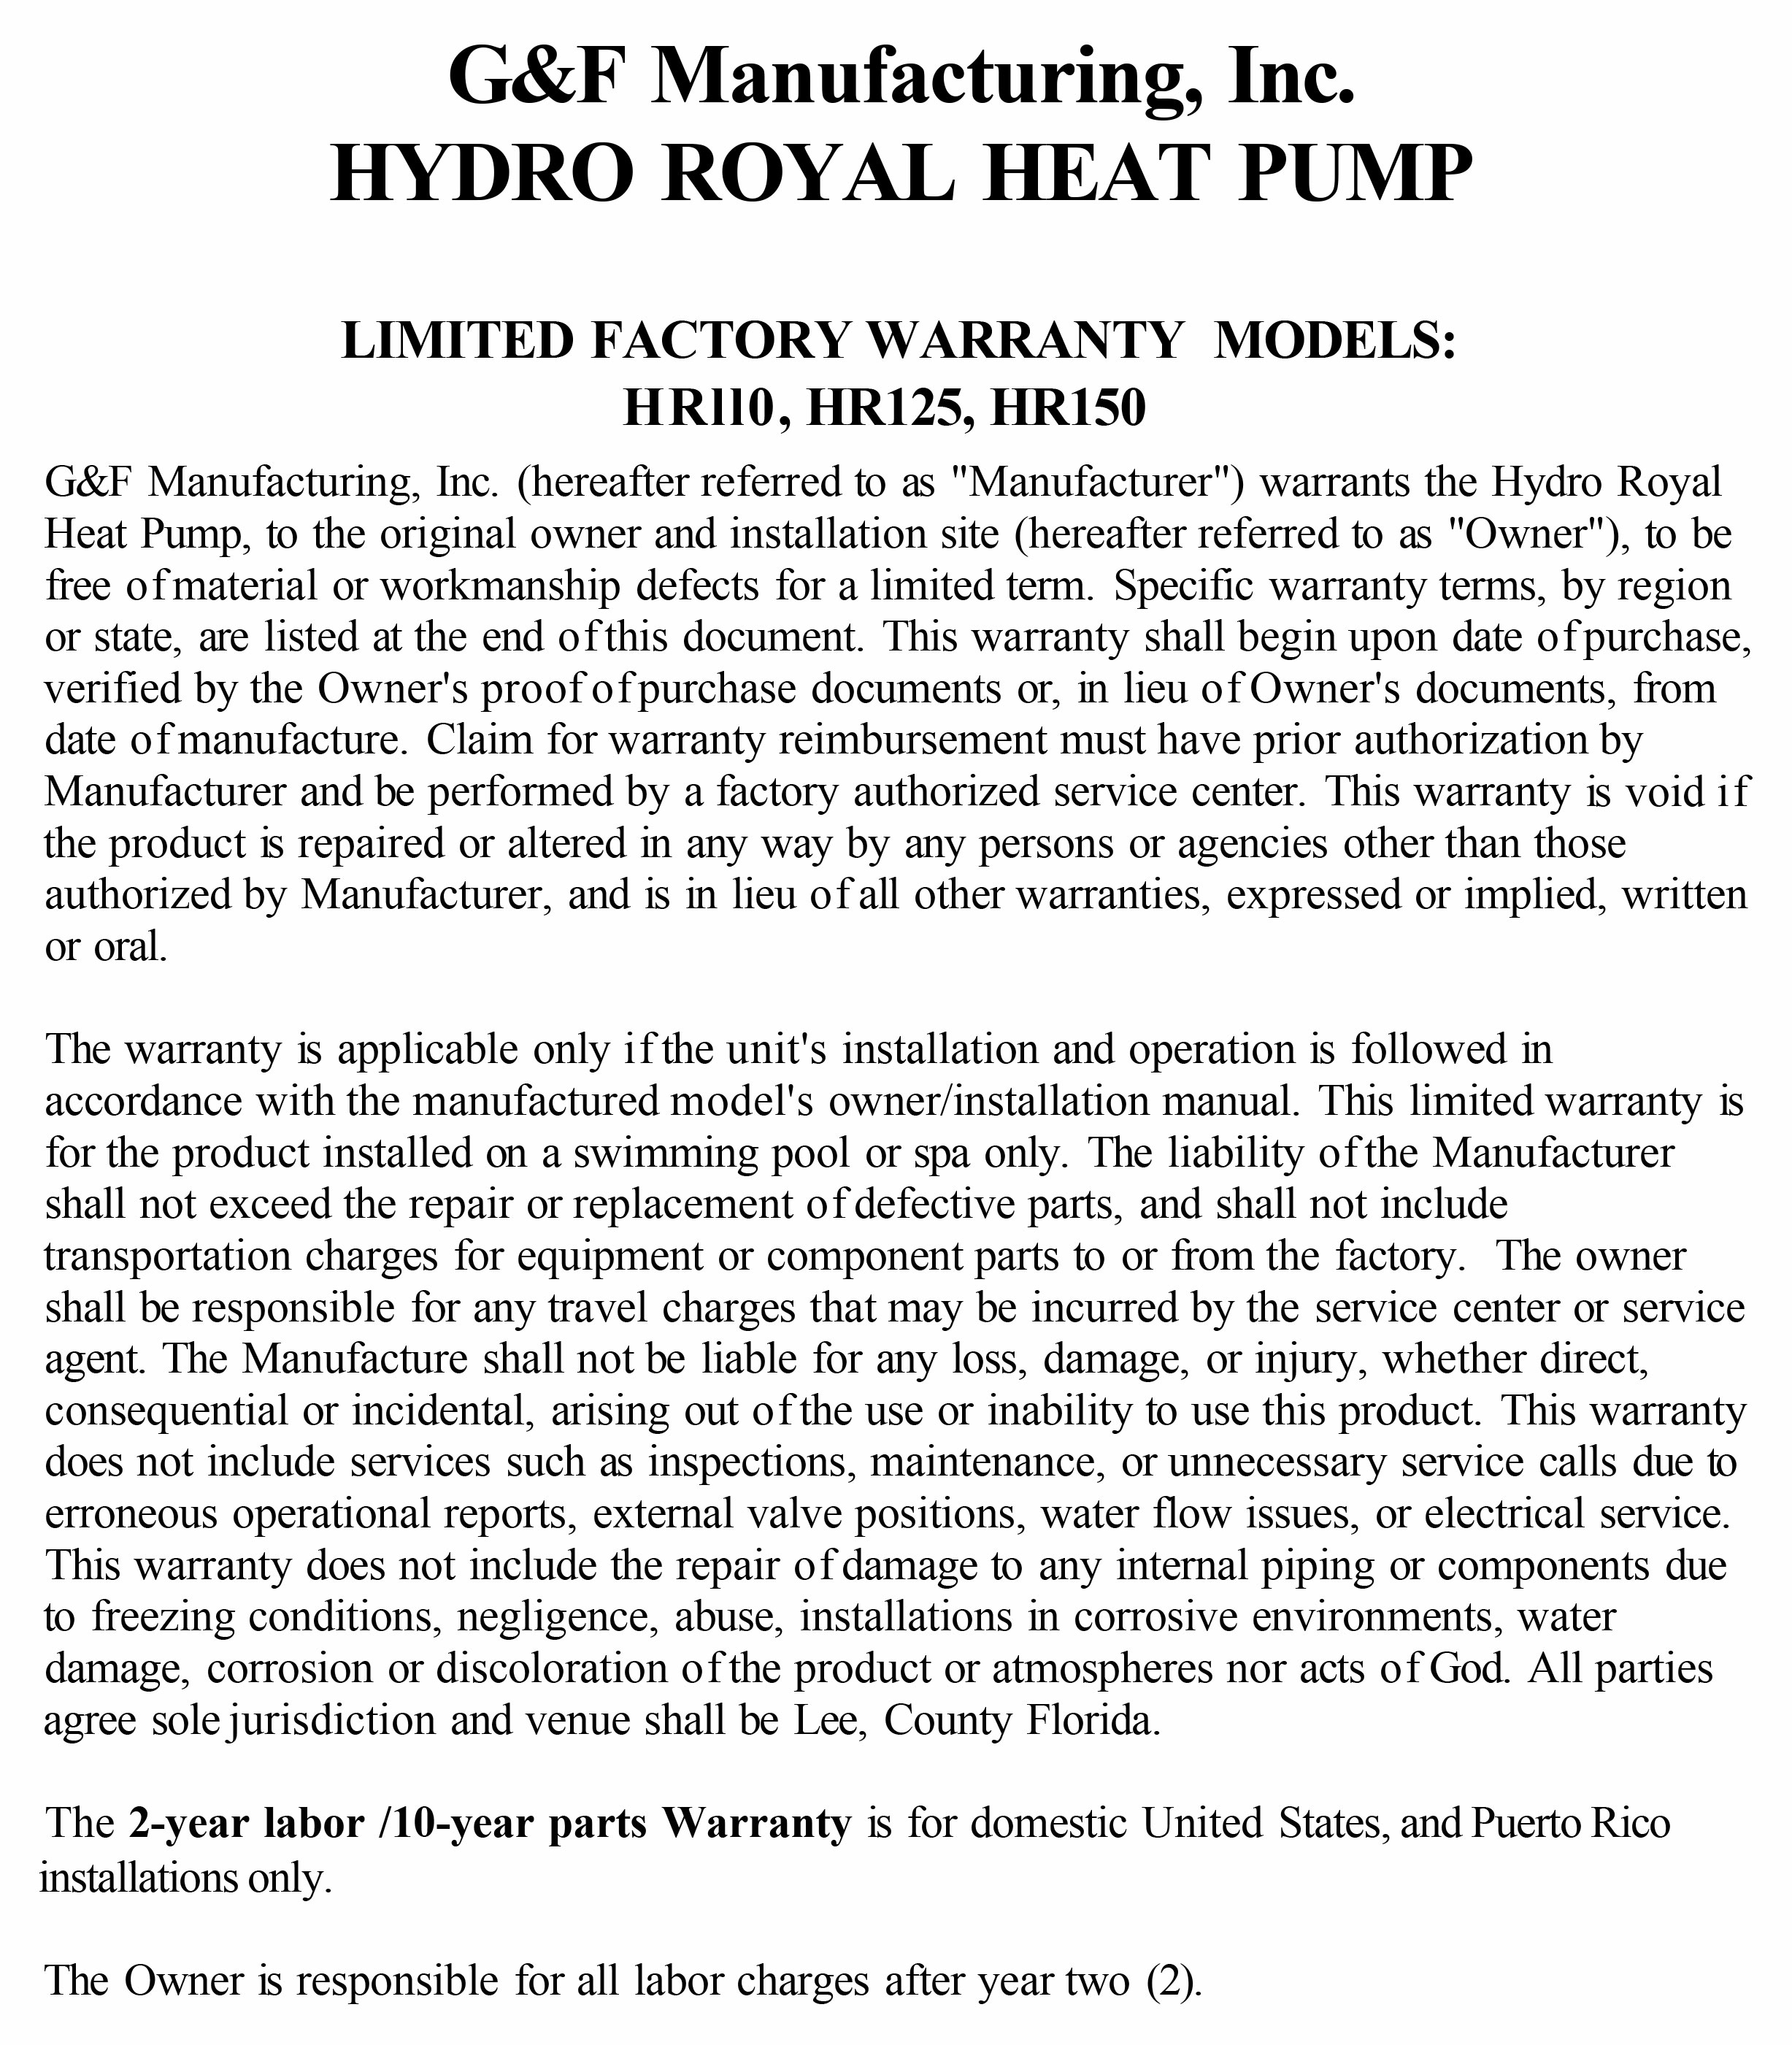 Hydro Royal Warranty